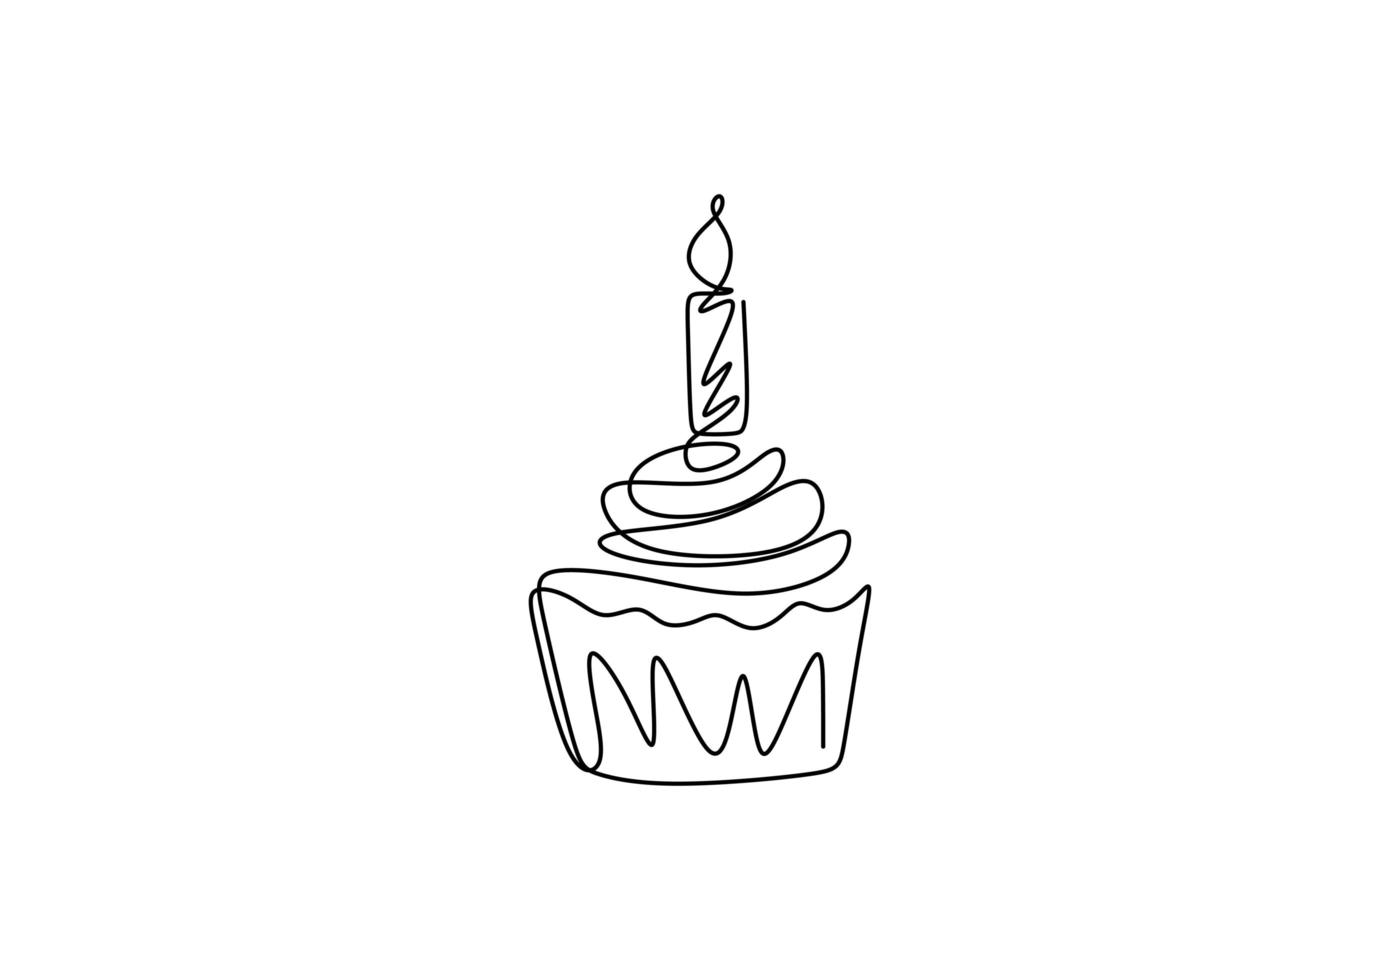 disegno a tratteggio continuo della torta di compleanno con candela. vettore